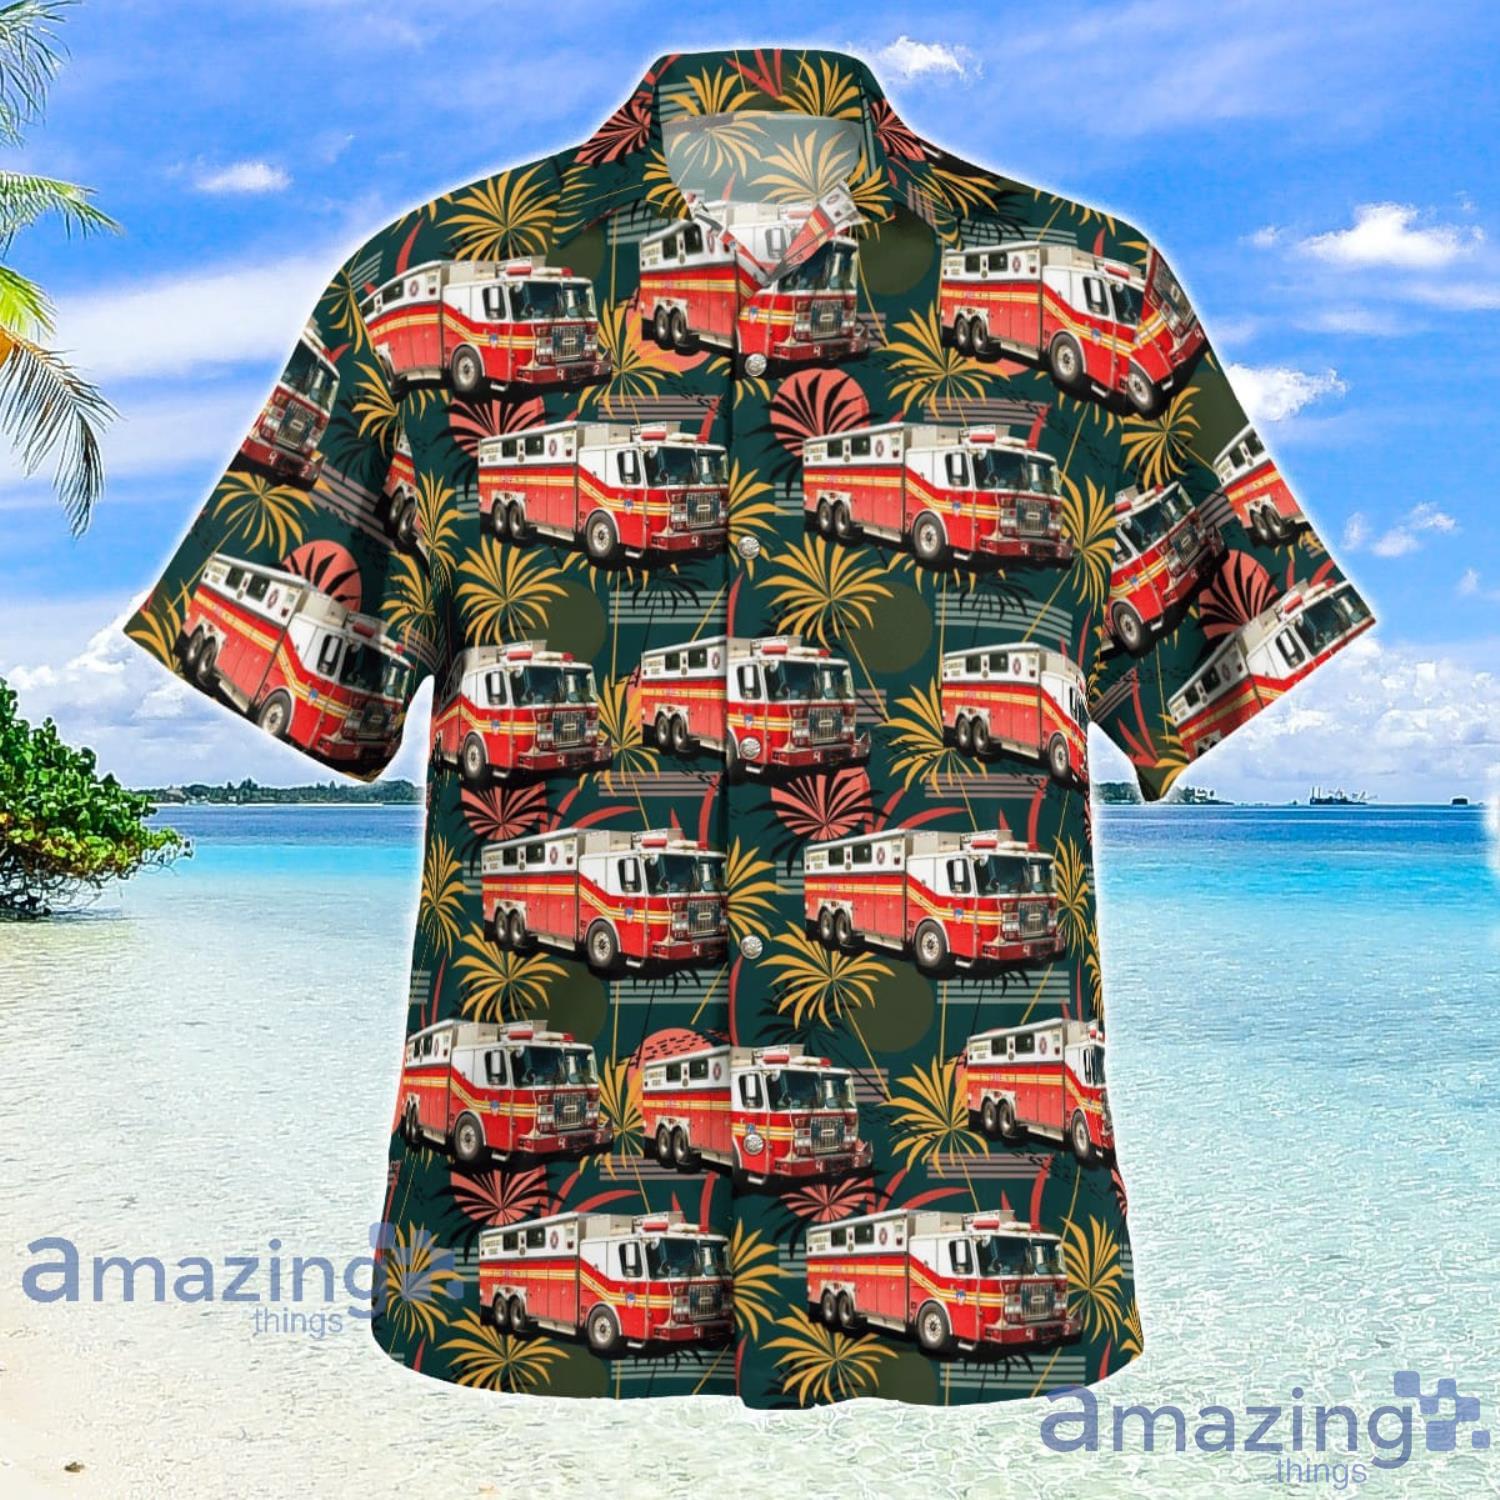 Patriot Day FDNY Rescue Company 4 - Woodside NY Aloha Hawaiian Shirt -  Freedomdesign